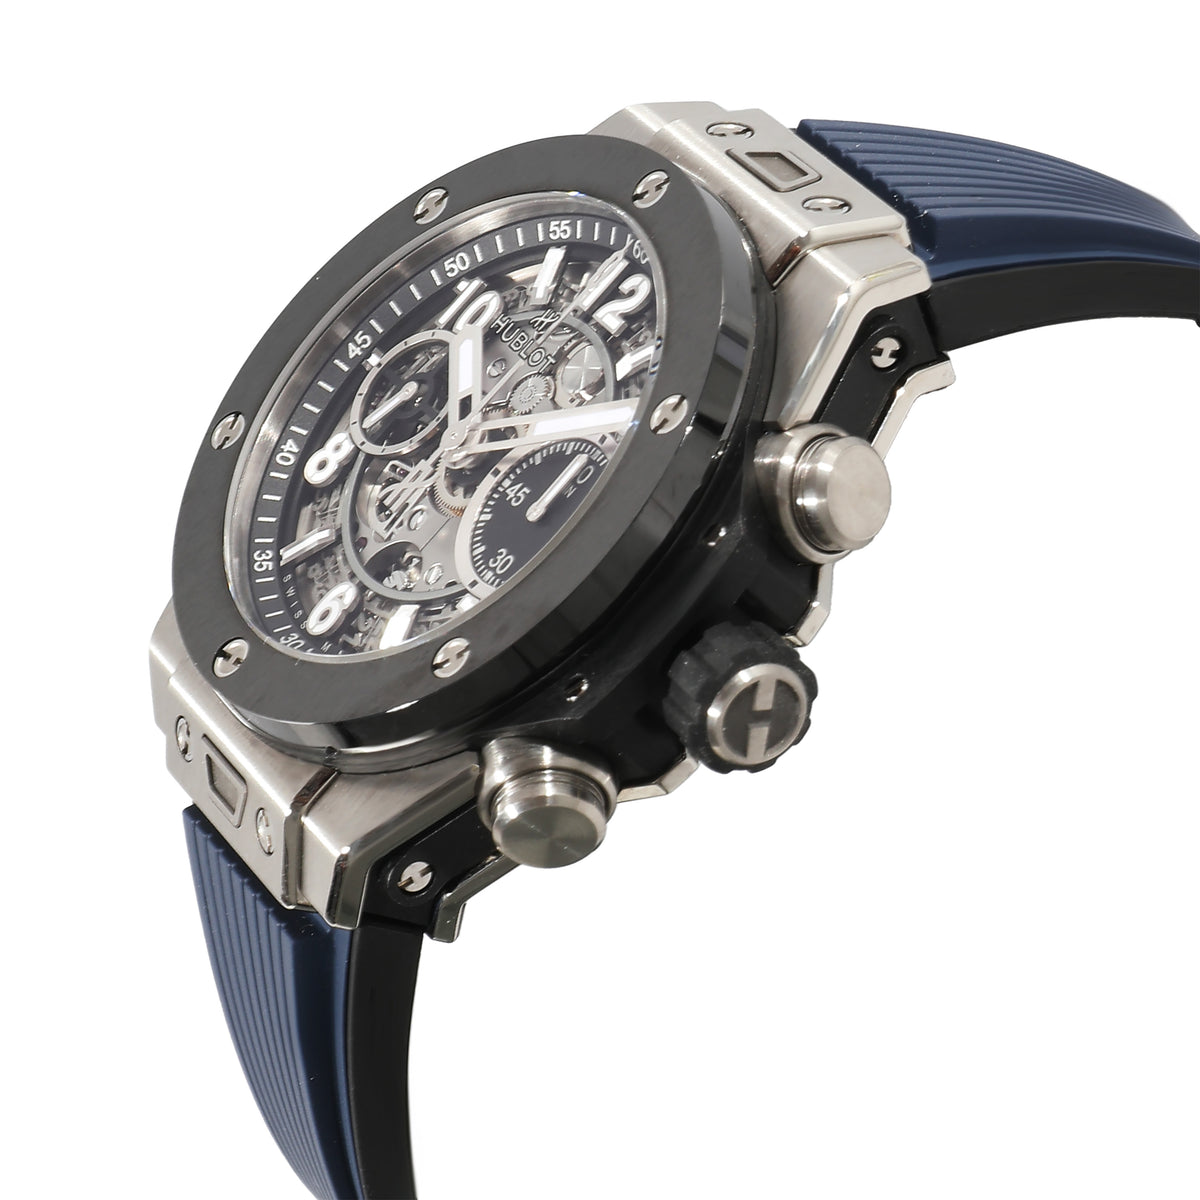 Big Bang Unico 441.NM.1171.RX Men's Watch in  Ceramic/Titanium